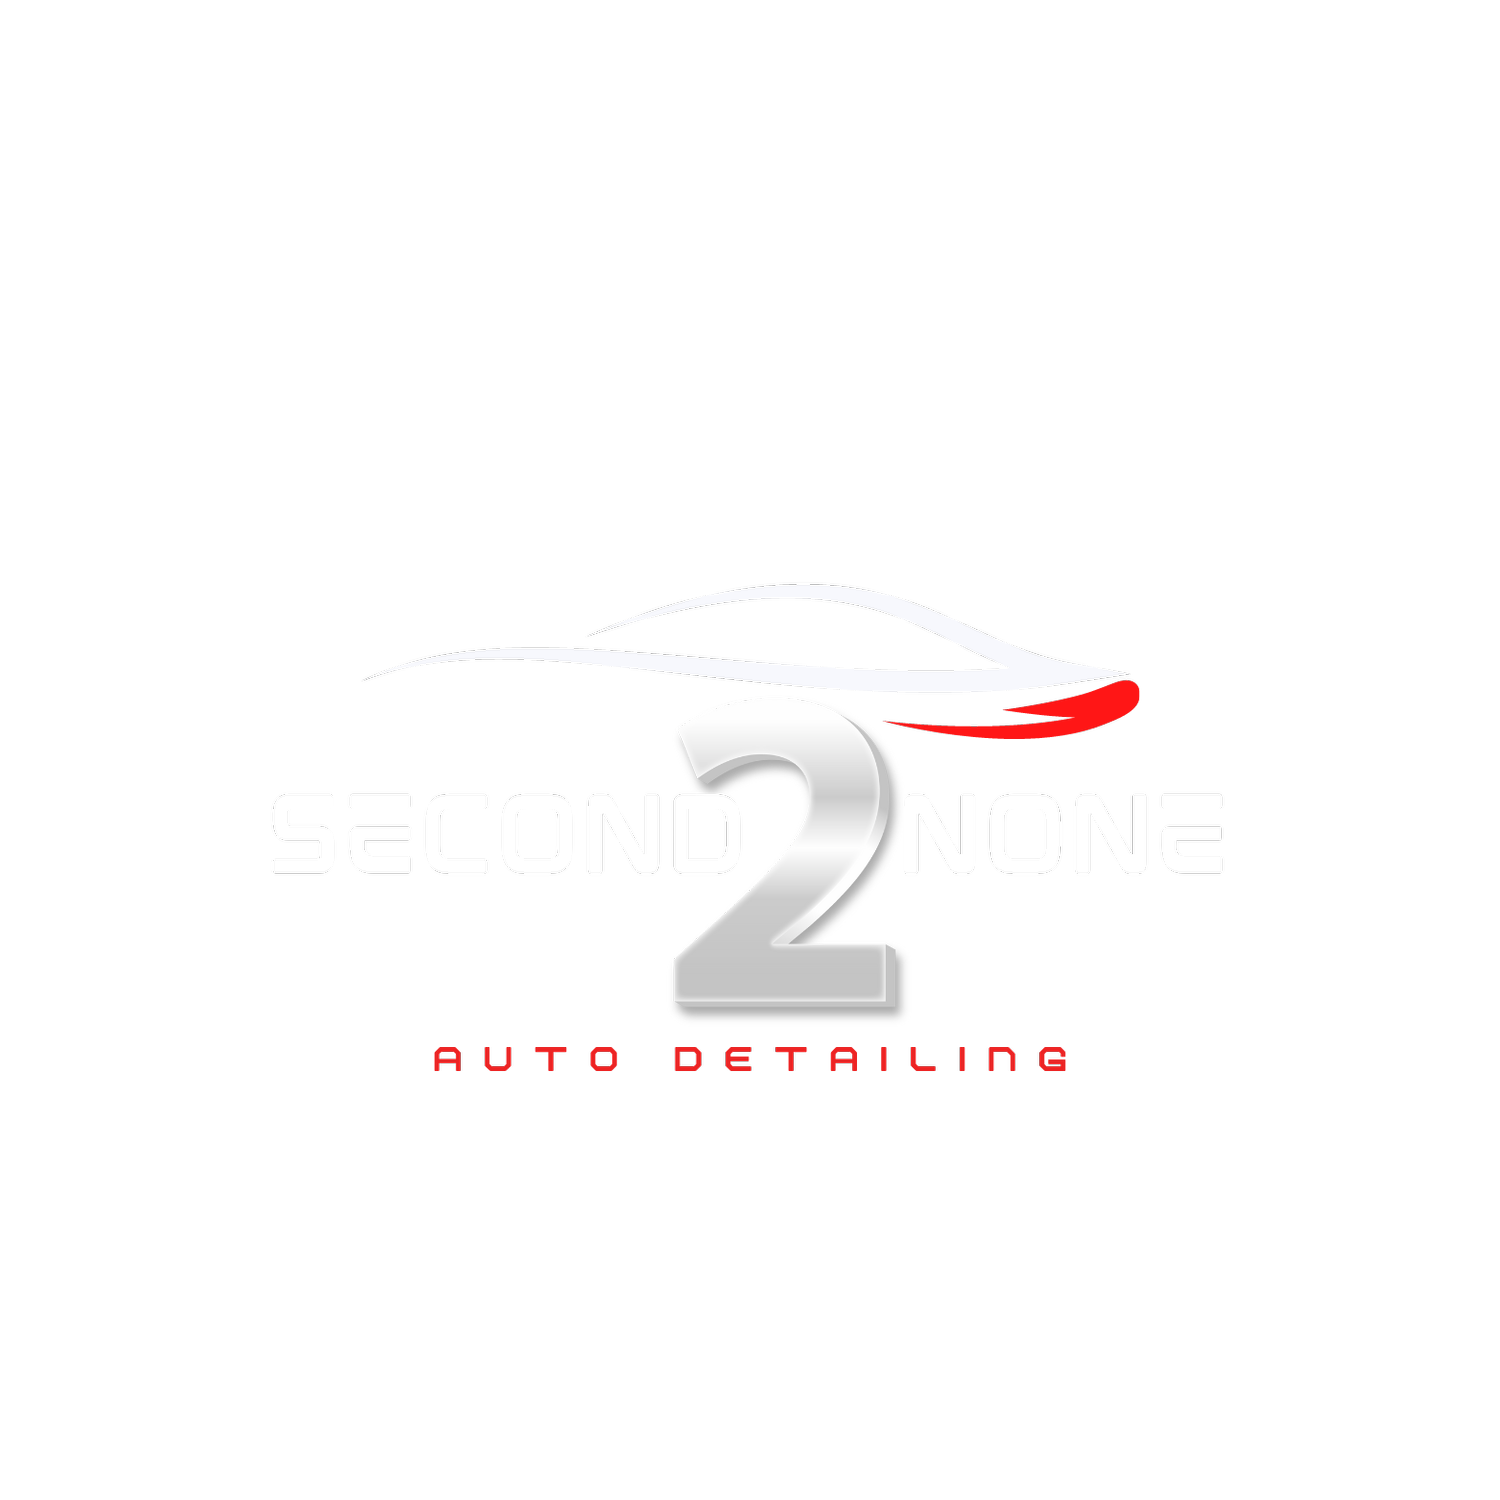 Second 2 None Auto